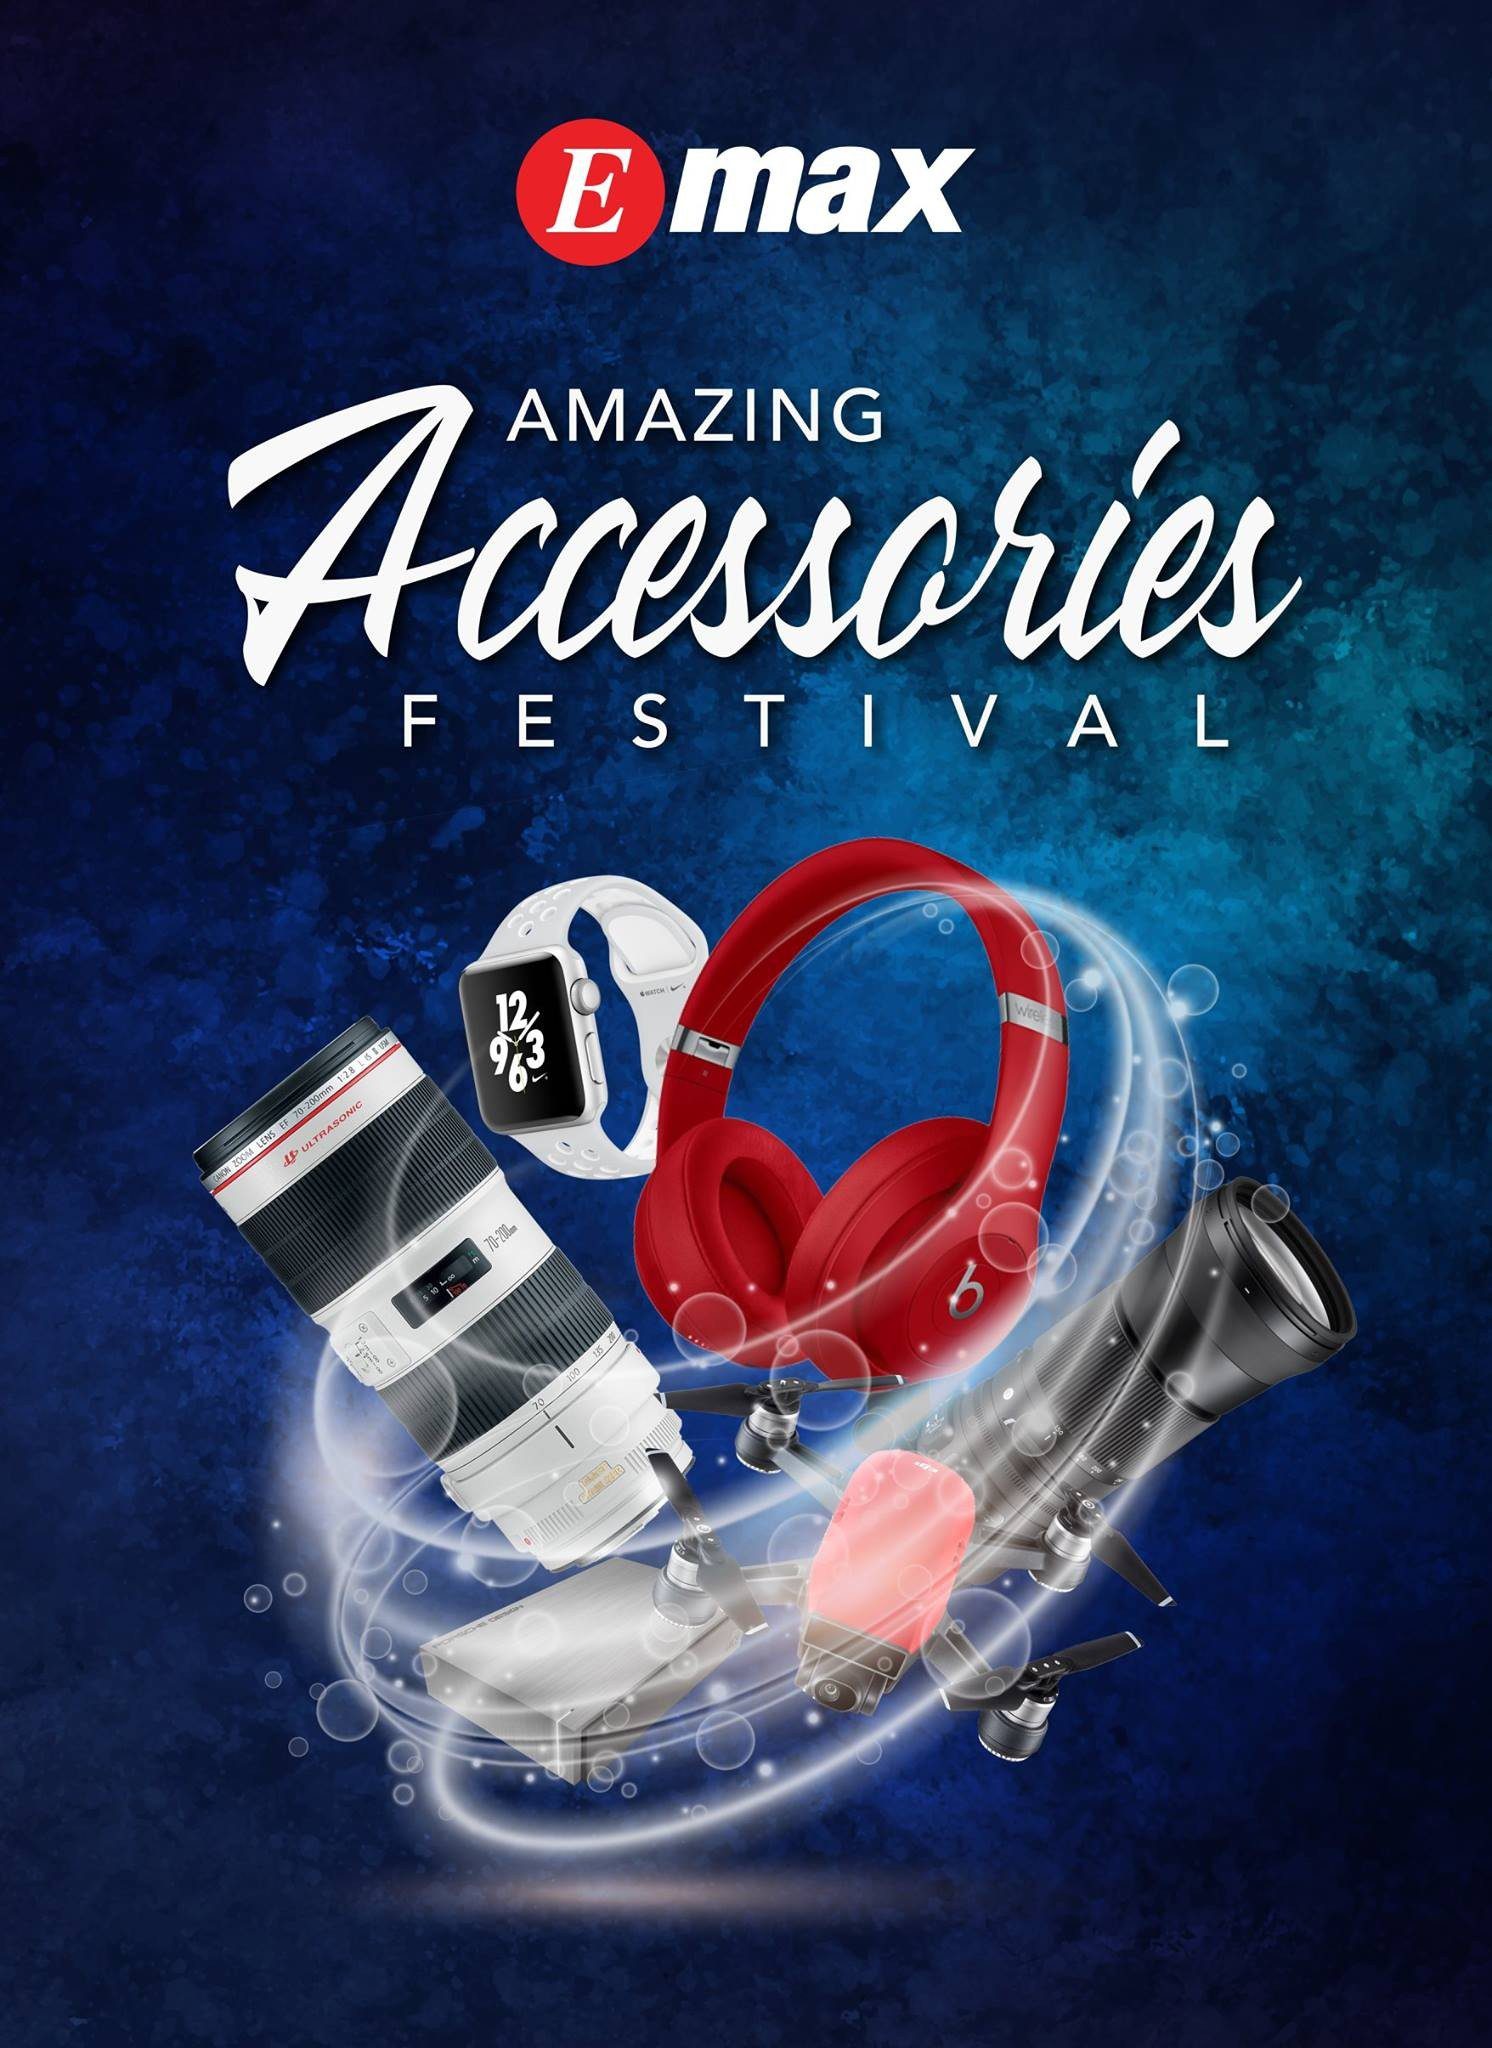 Emax Amazing Accessaries Festival